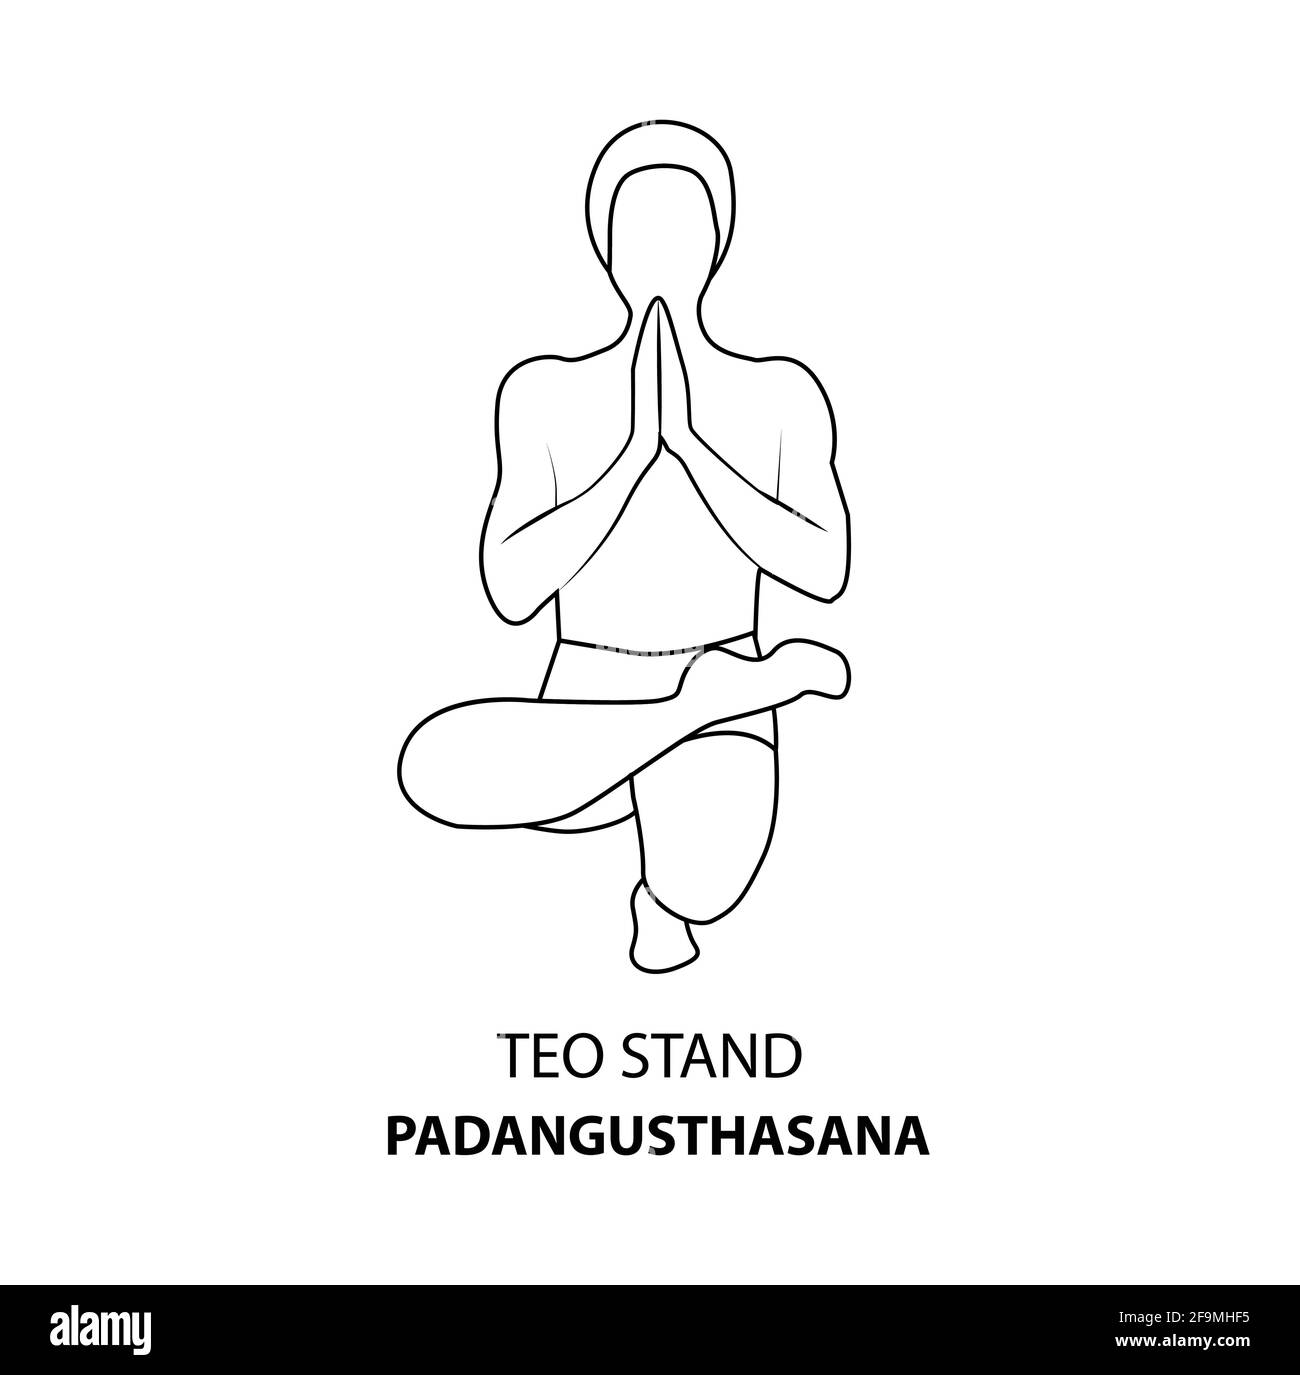 Homme pratiquant le yoga pose isolé contour Illustration. Homme debout dans la posture de teo ou pose de padangusthasana, icône de la ligne de Yoga Asana Illustration de Vecteur